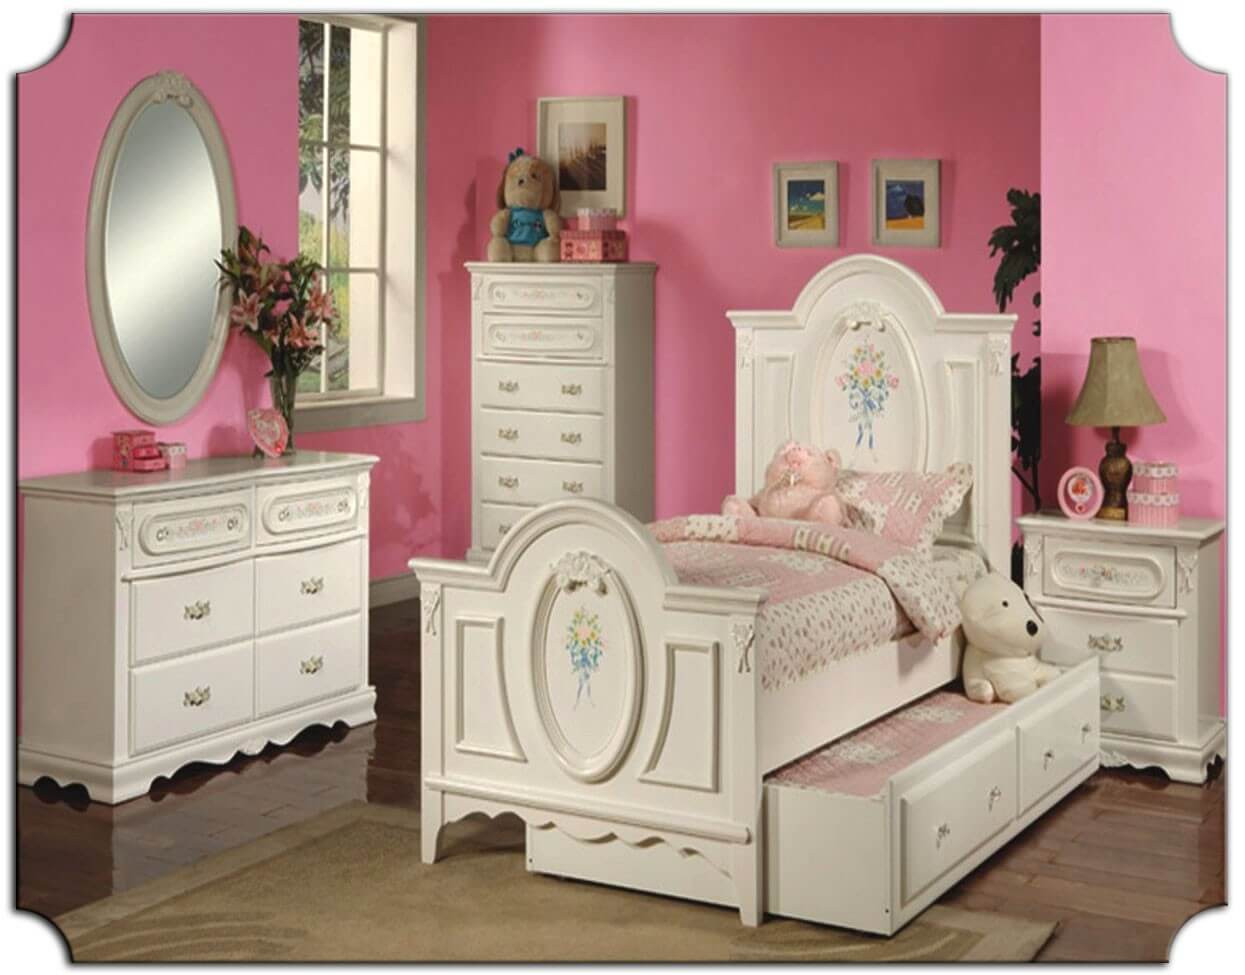 Girls Bedroom Sets Furniture
 The Best Kids Bedroom Furniture Sets Best Interior Decor